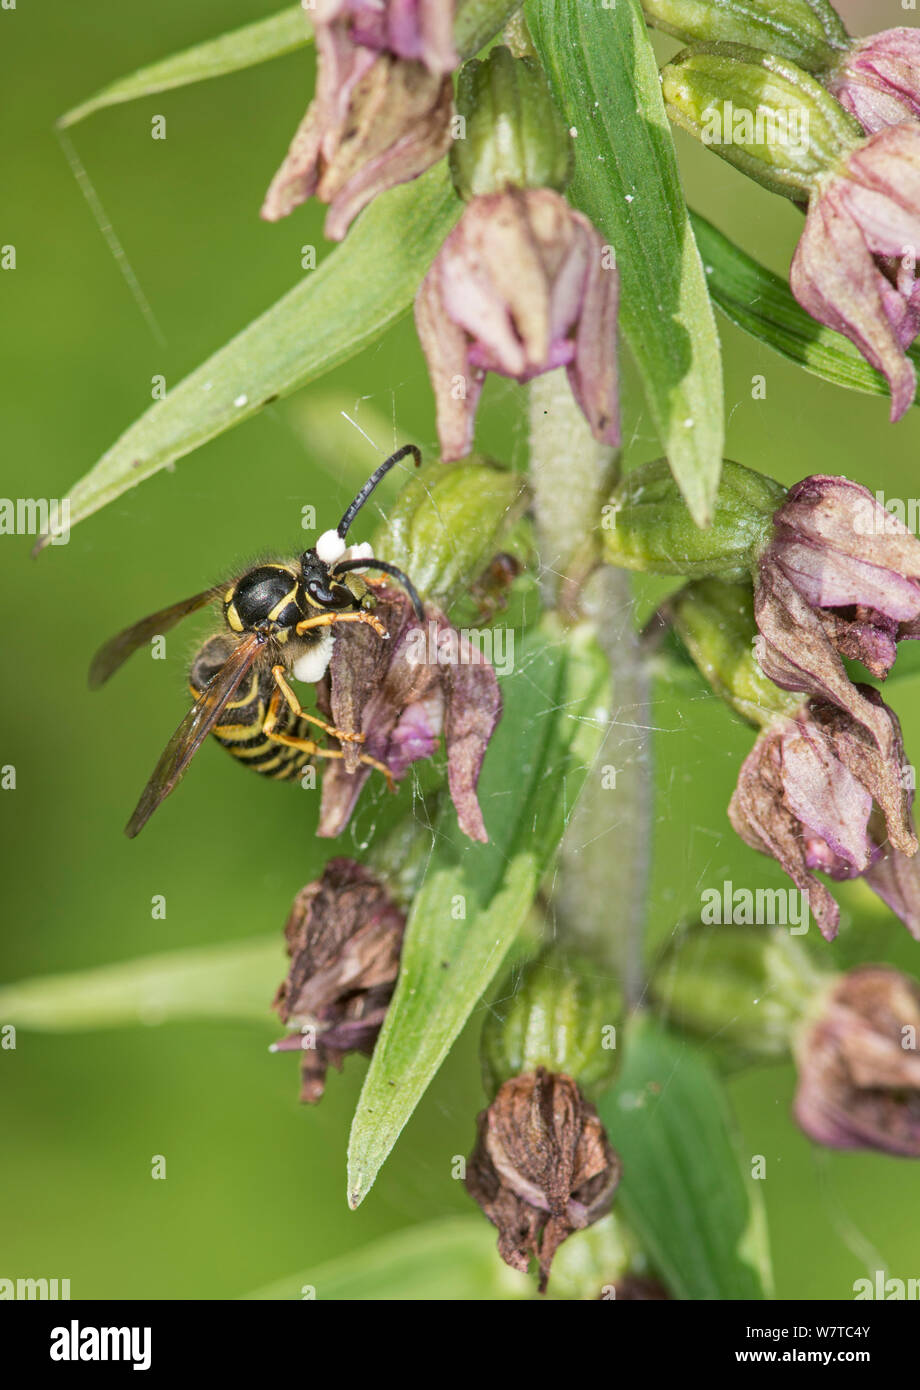 Guêpe (Vespula sp) pollinisent Feuillus Orchidée Epipactis helleborine (hellebore) avec les pollinies sur tête, Surrey, Angleterre, Royaume-Uni, août. Banque D'Images